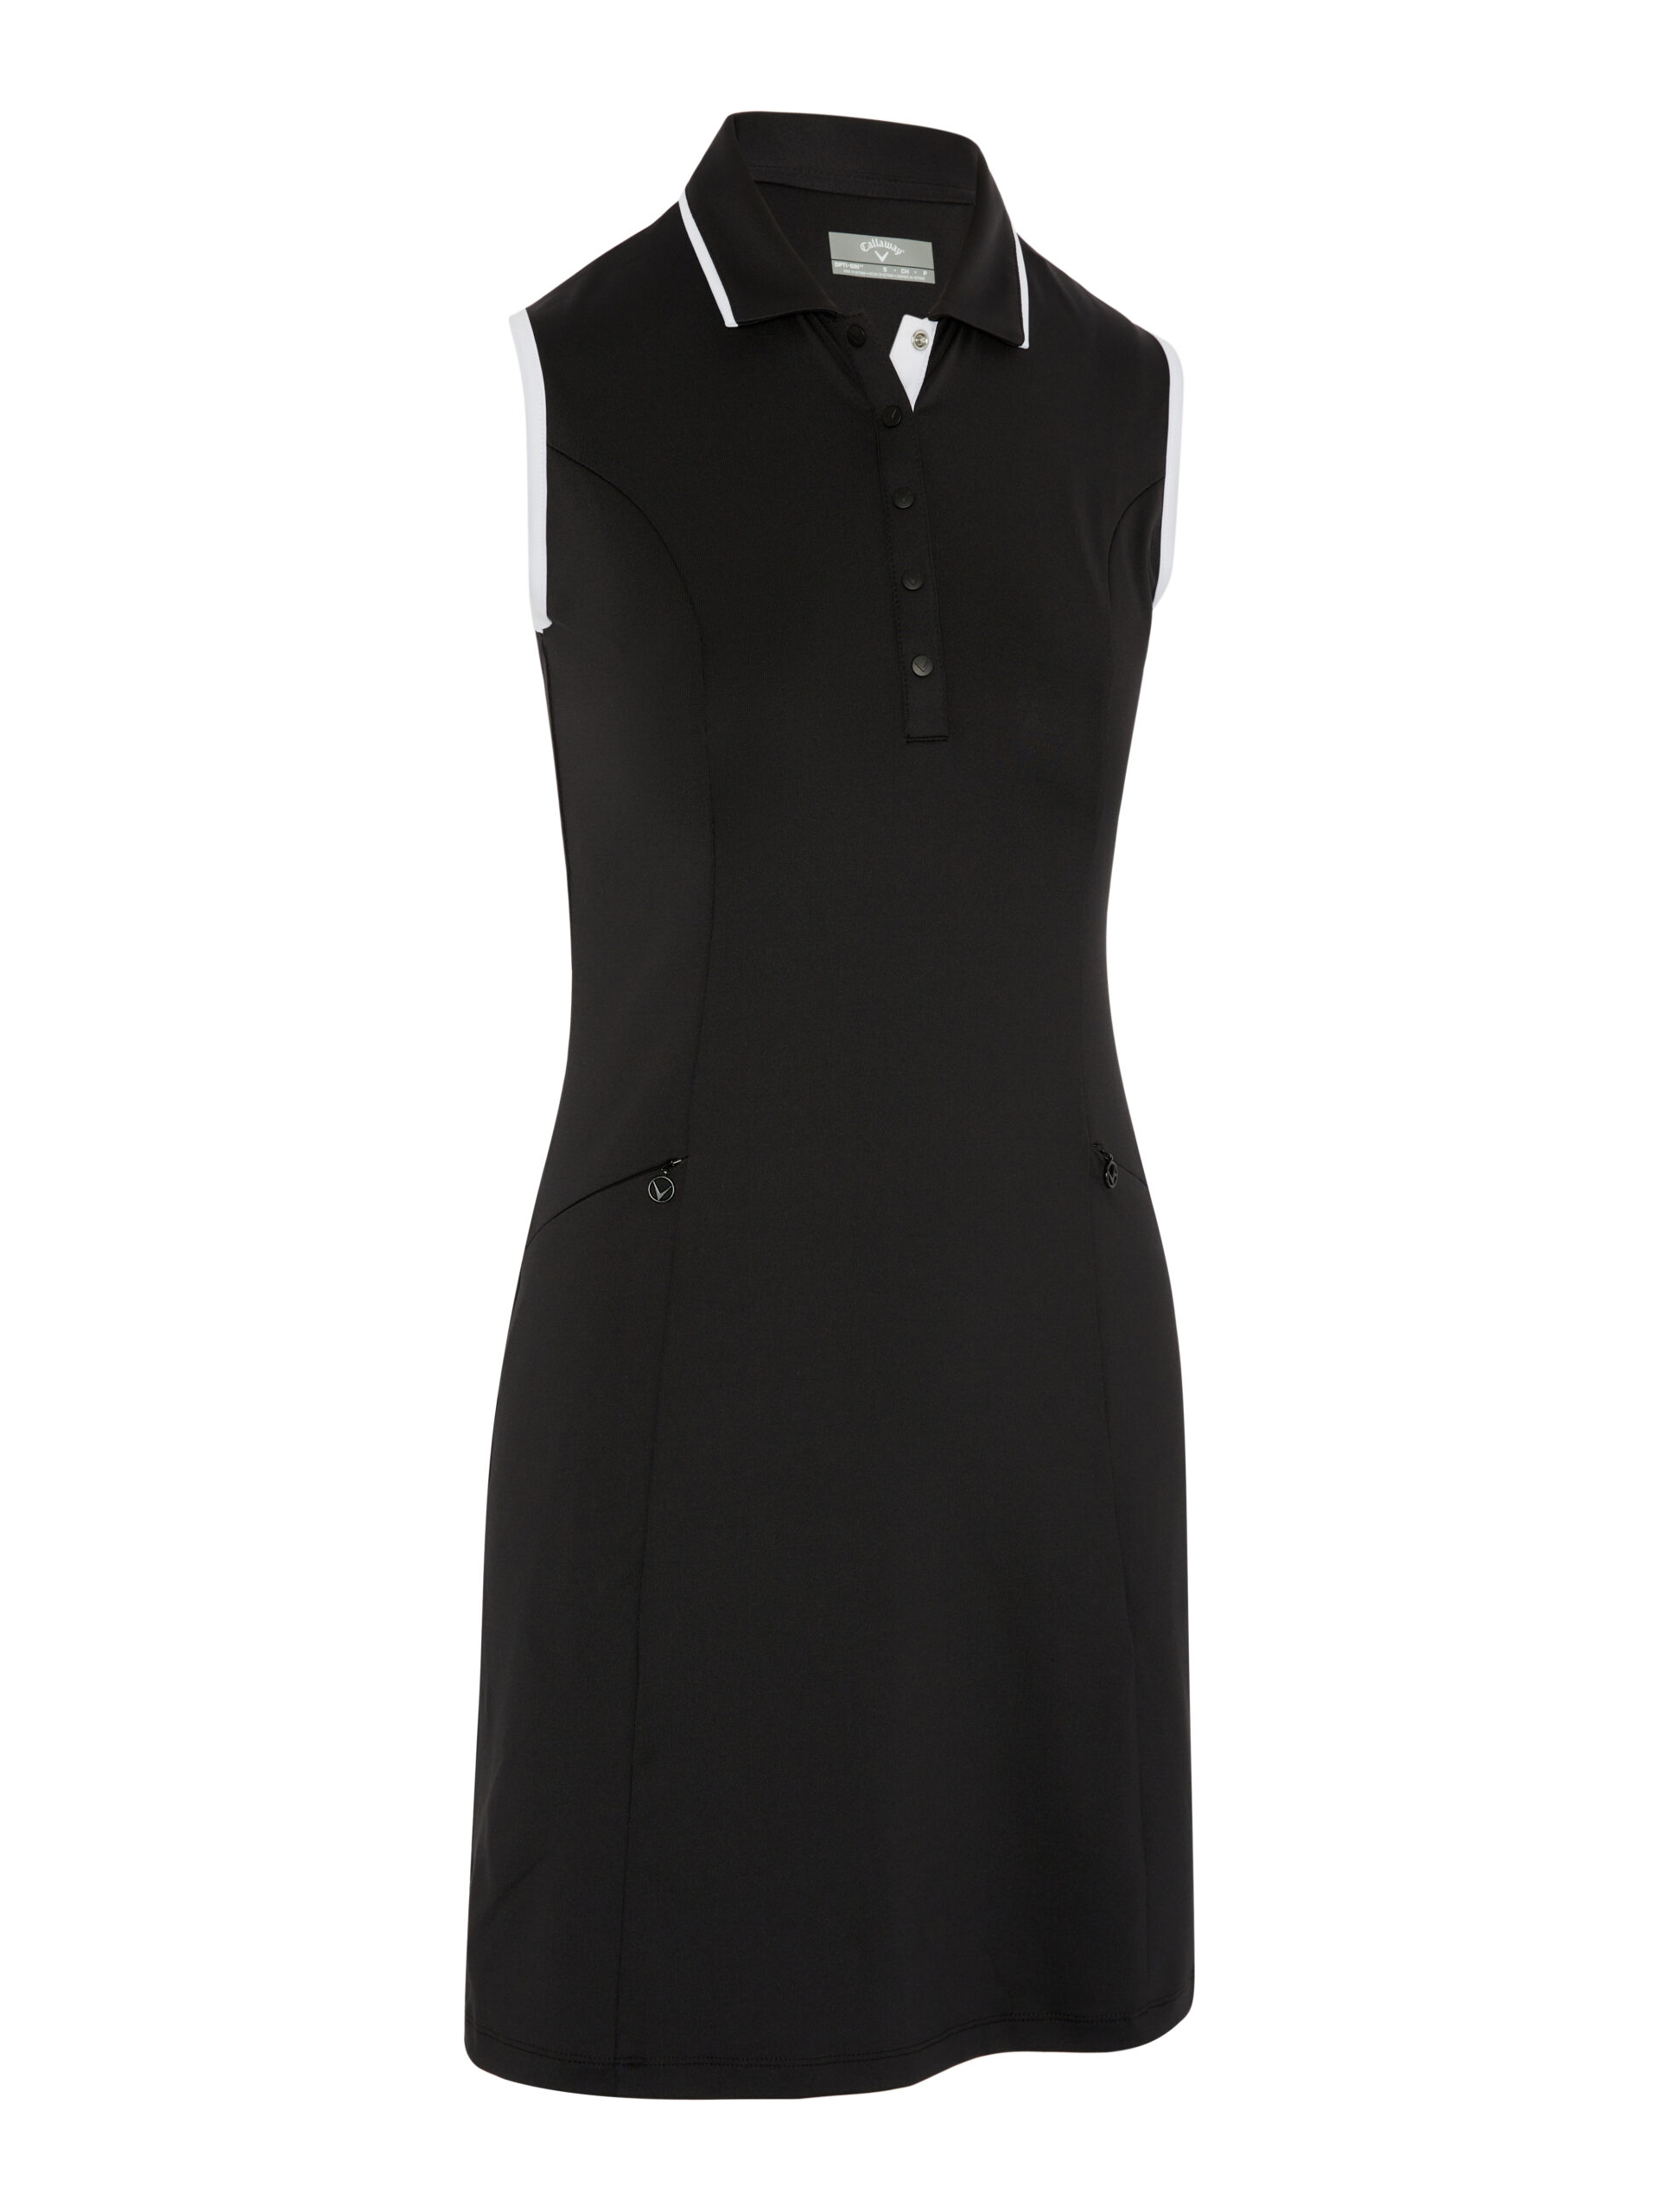 Callaway dámské golfové šaty, černé, vel. S